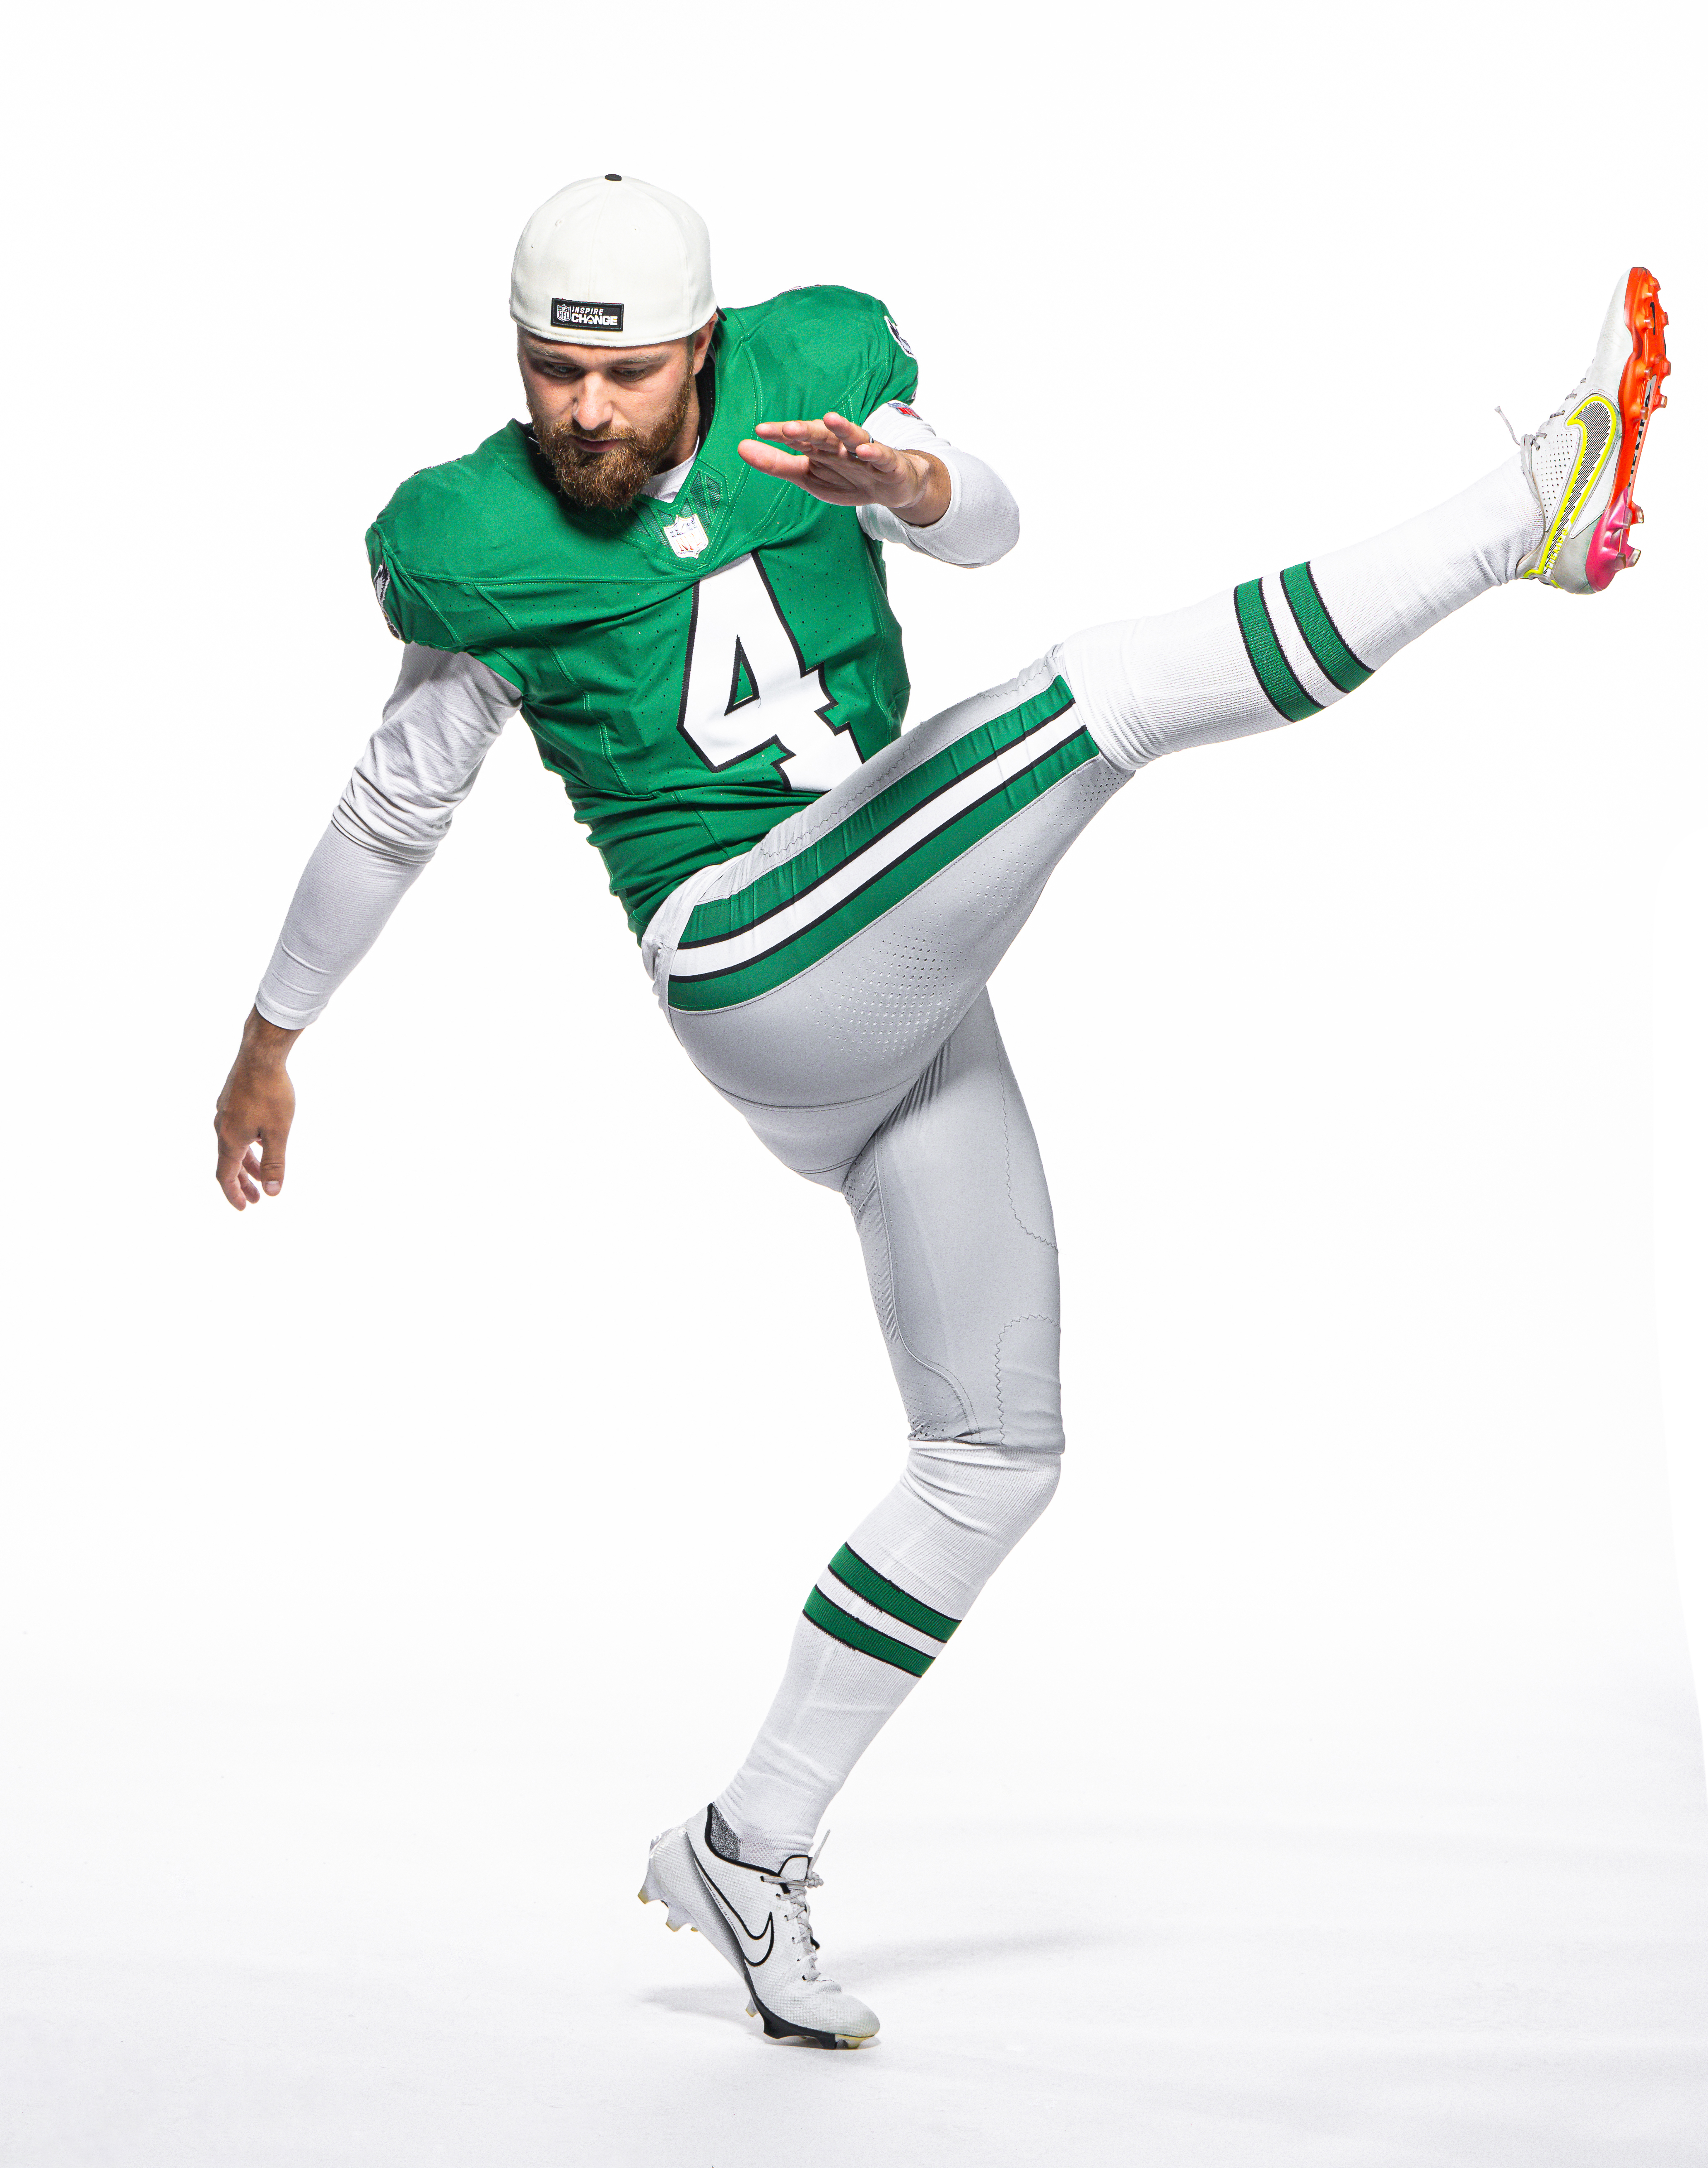 Philadelphia Eagles To Wear Kelly Green Alternate Uniforms In 2023 –  SportsLogos.Net News